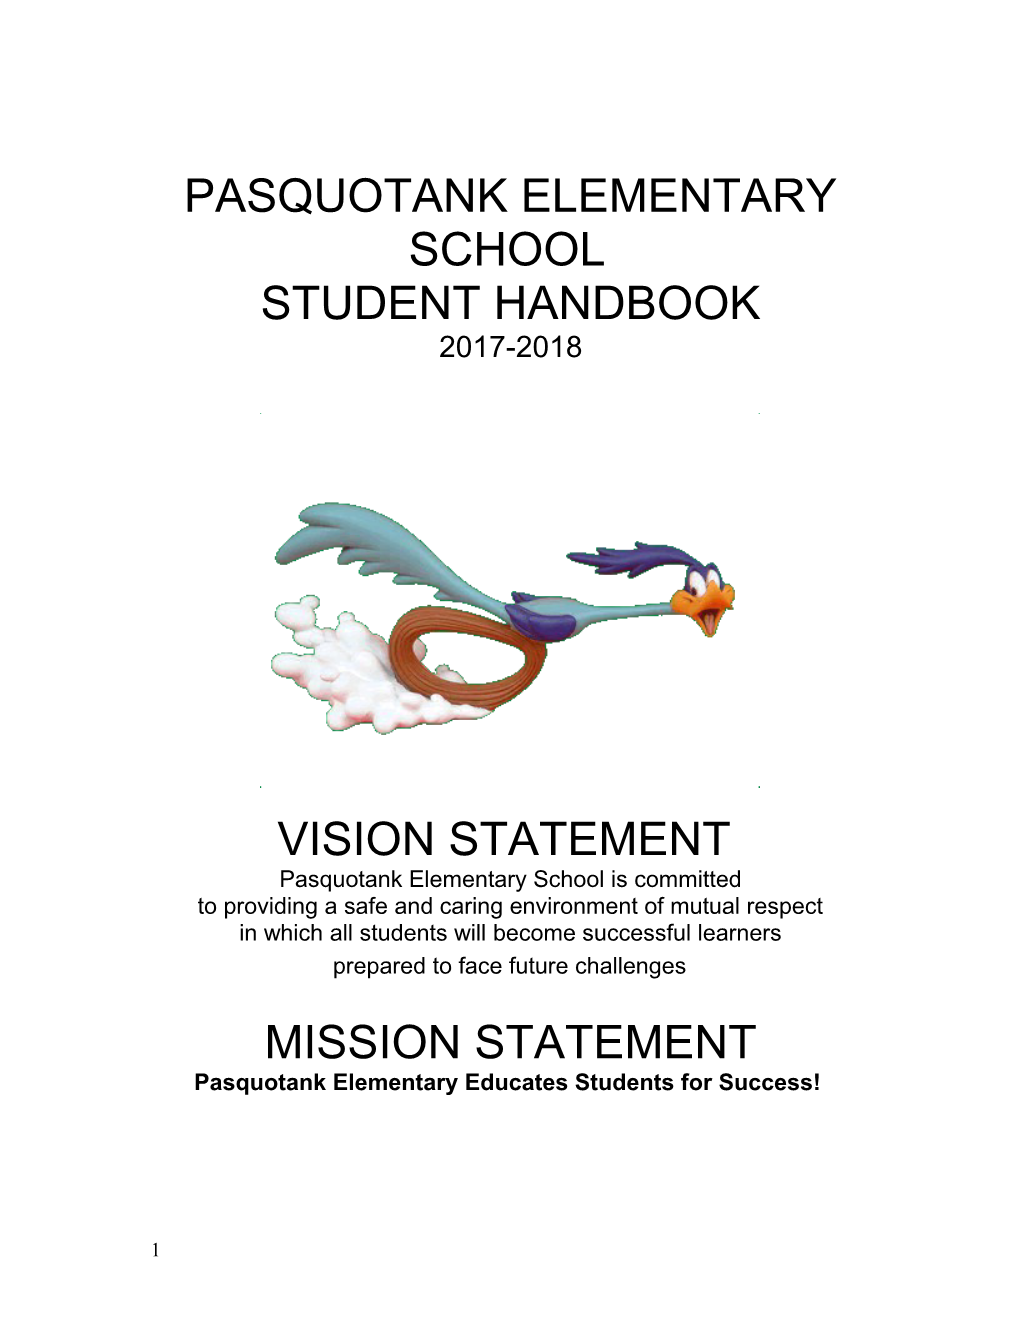 Pasquotank Elementary School